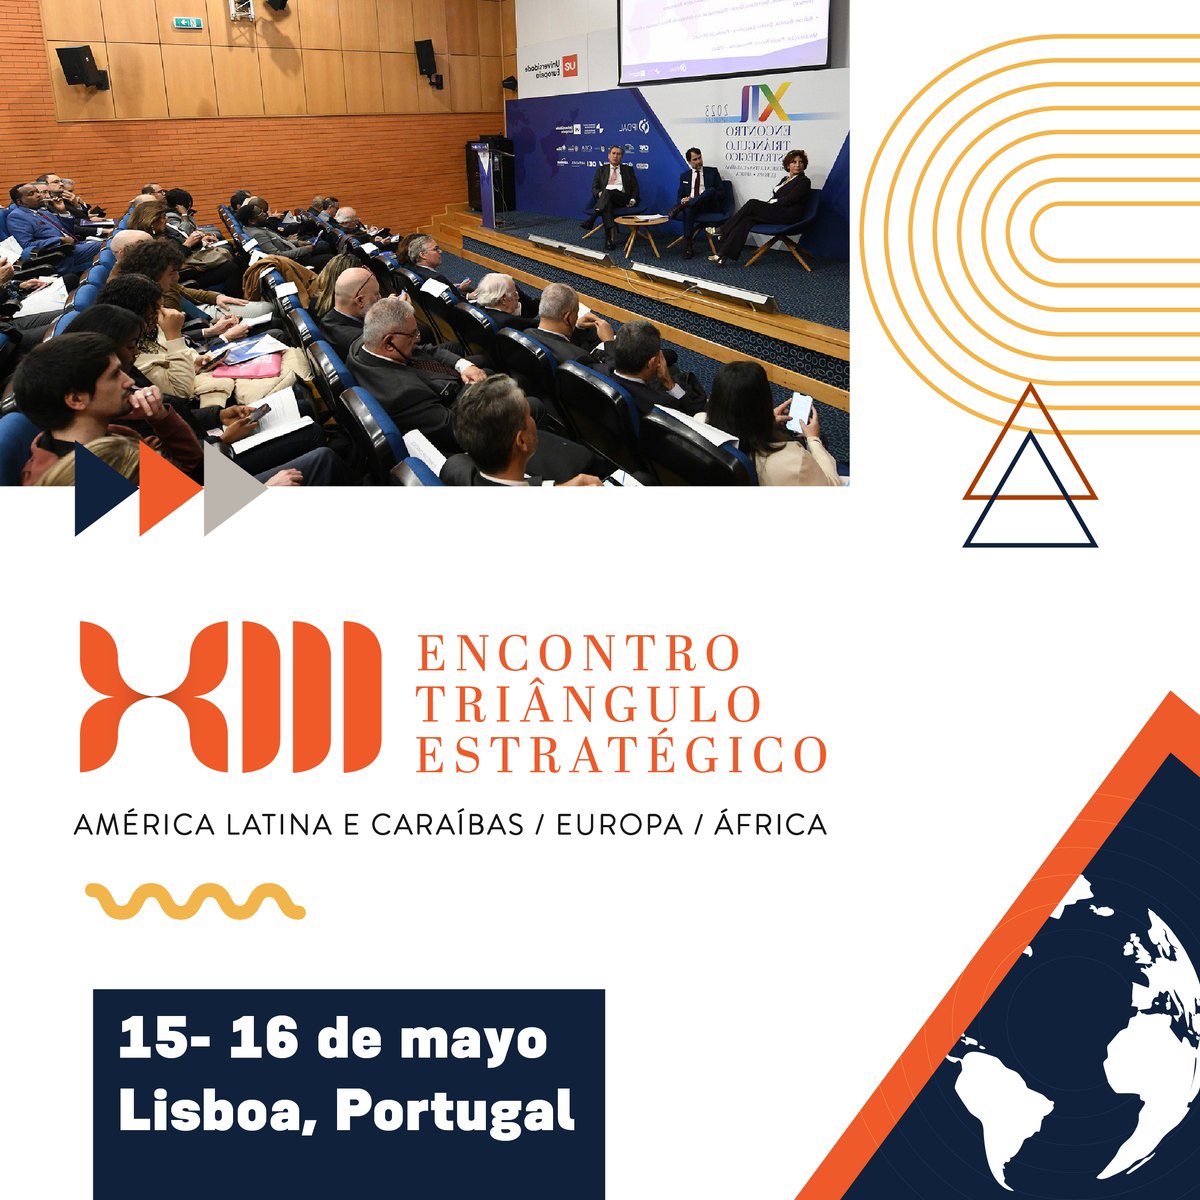 Llega la XIII edición del Encuentro del Triángulo Estratégico🌍 IPDAL organiza un encuentro para que América Latina y el Caribe, Europa y África debatan cuestiones clave como la cooperación sur-sur, el multilateralismo y la triangulación transatlántica 📅15 y 16 de mayo, Lisboa